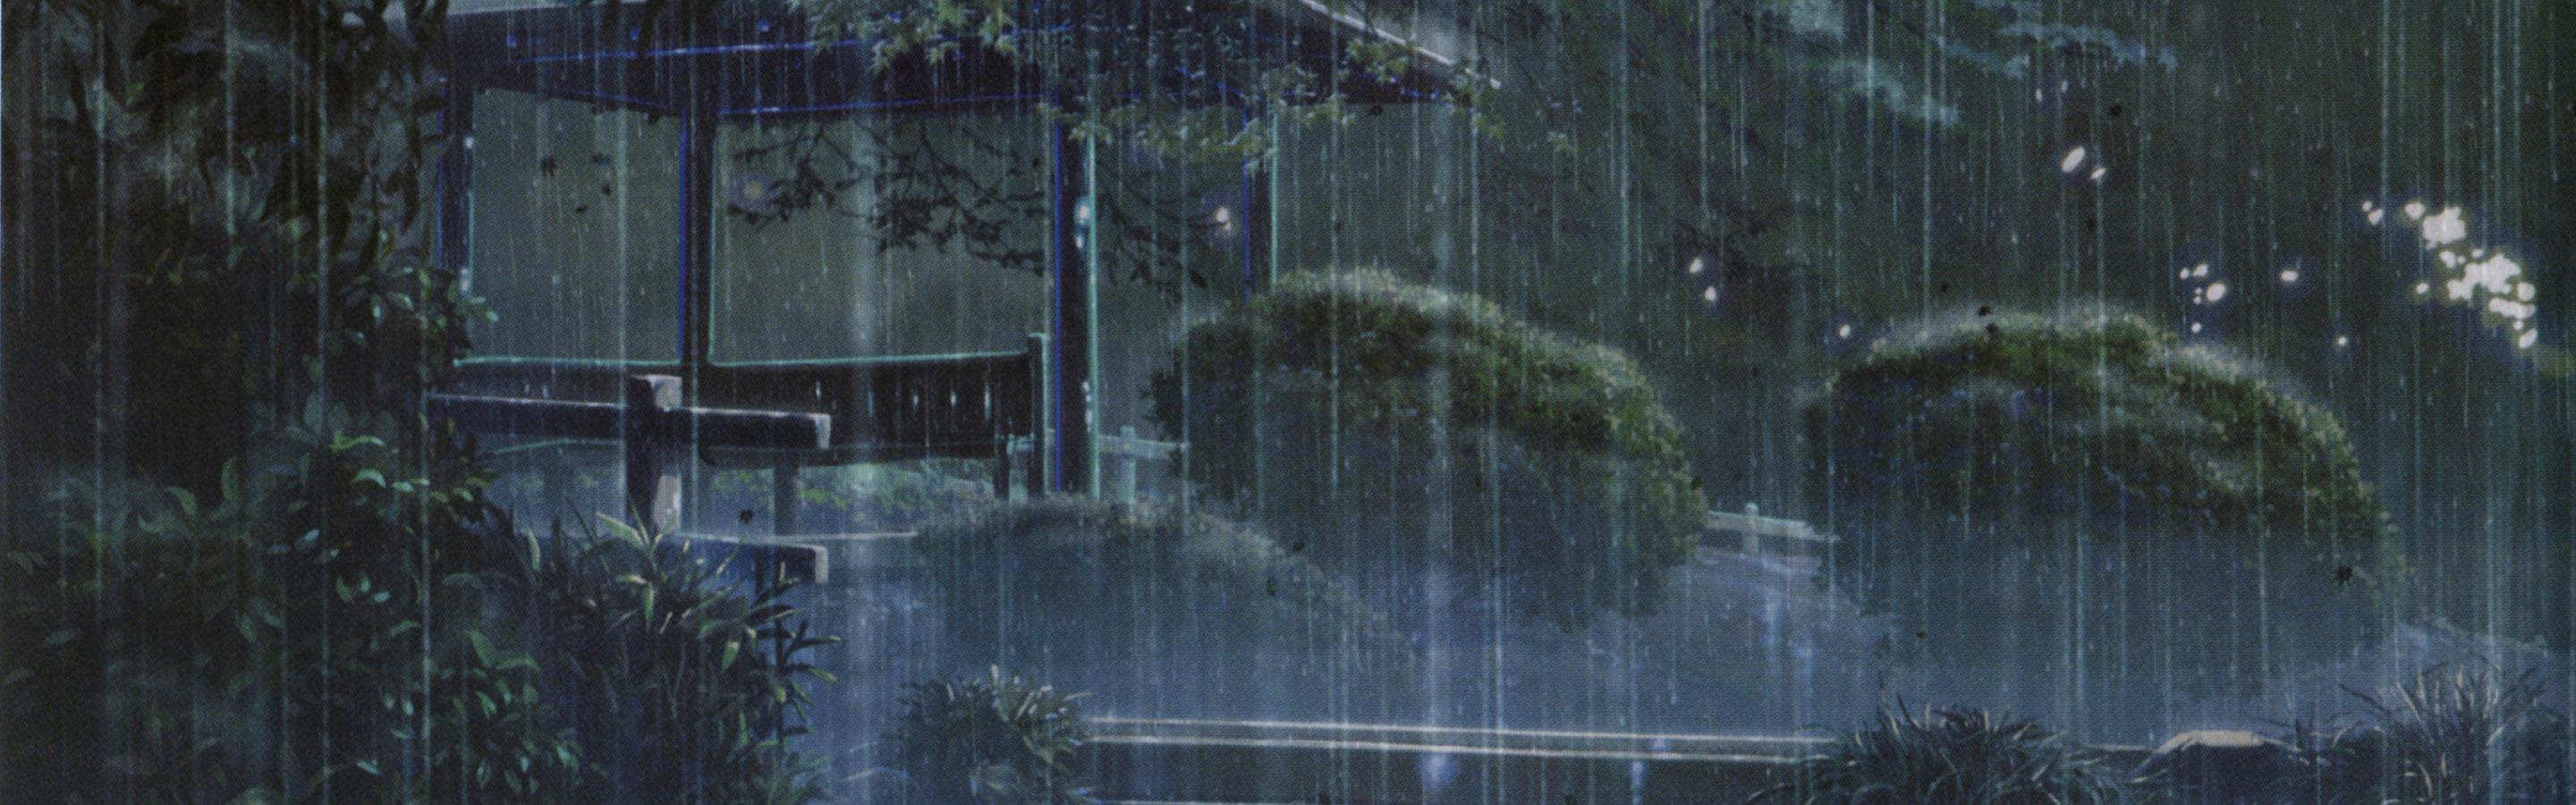 Дождь без перерыва. Сад изящных слов город дождь. Эстетика Макото Синкай.